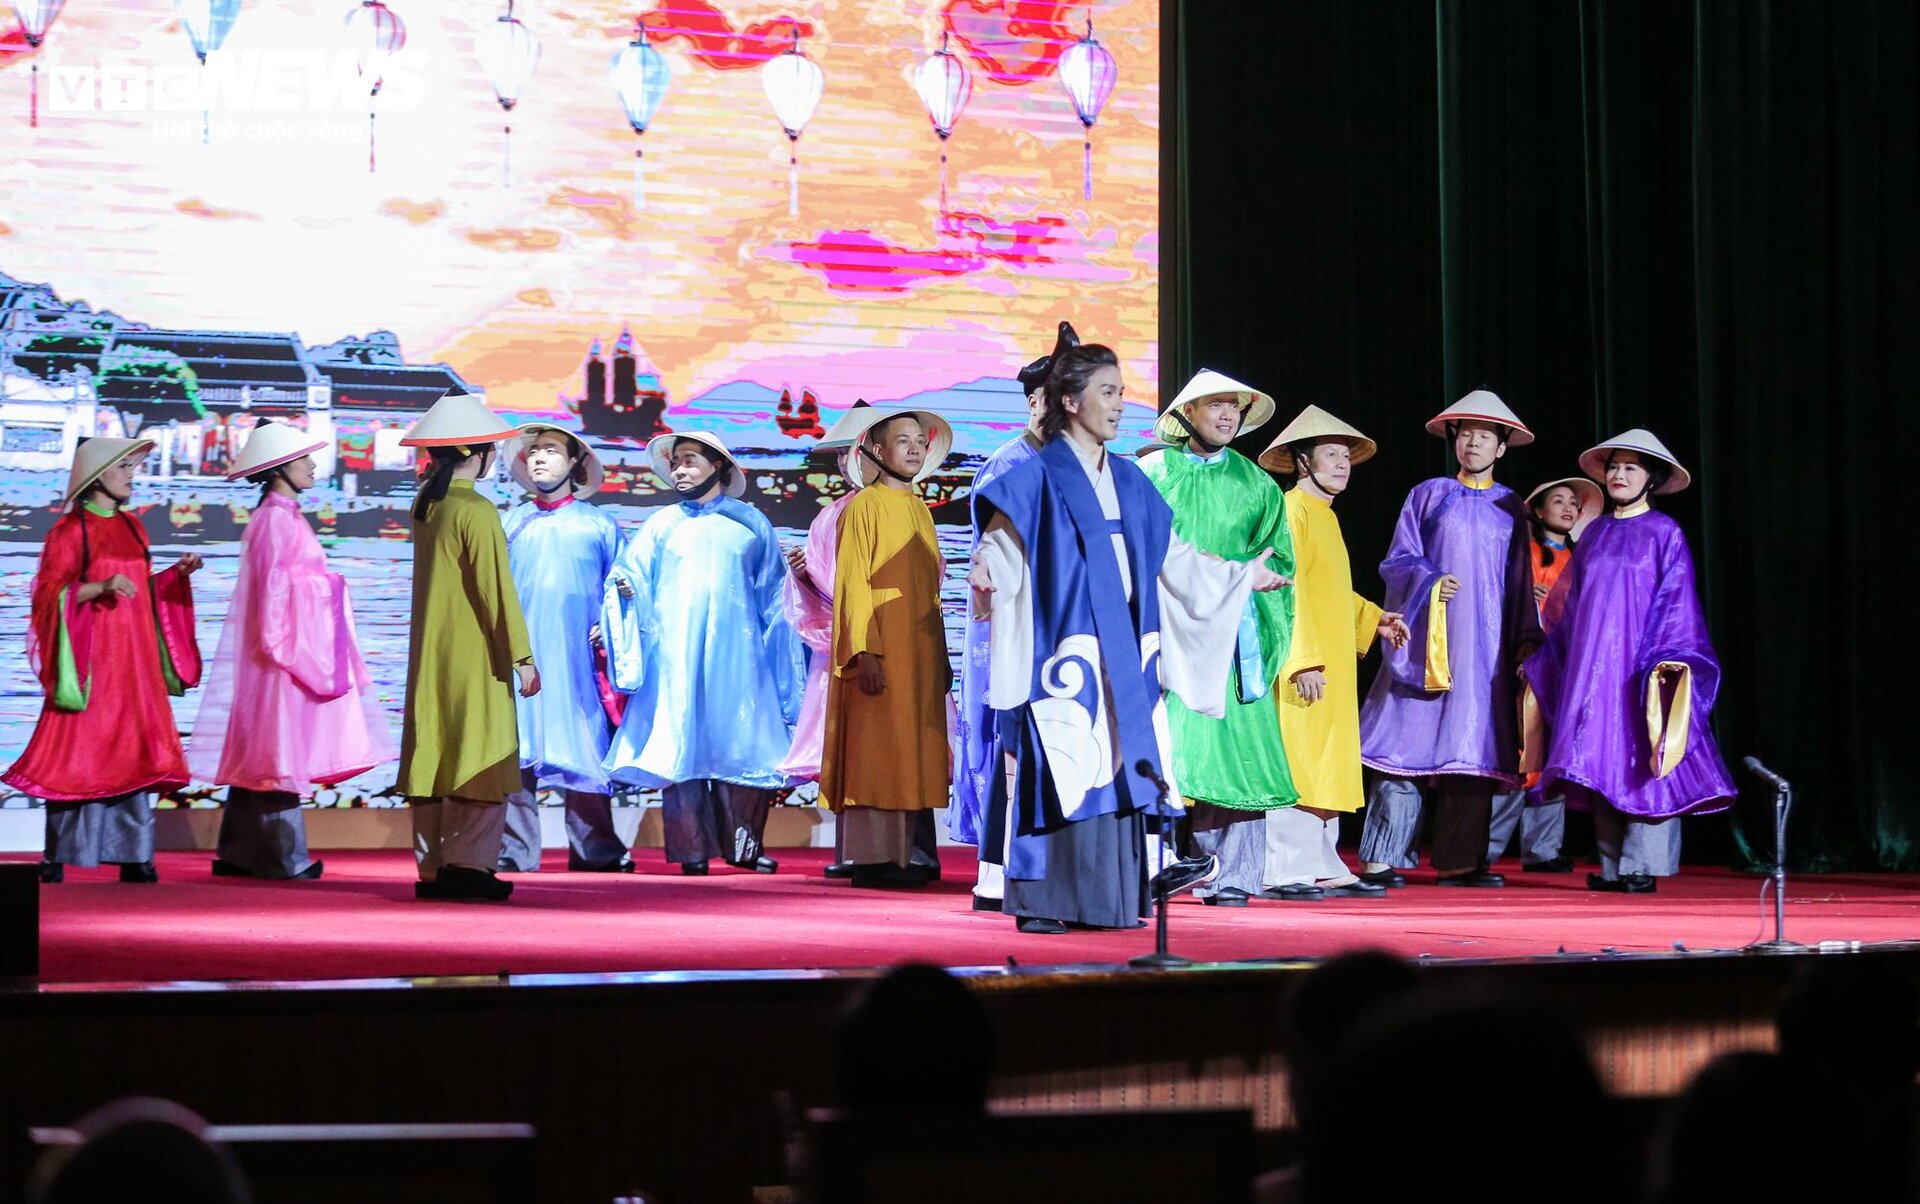 Biểu diễn vở opera kỷ niệm 50 năm quan hệ ngoại giao Việt Nam - Nhật Bản - 13